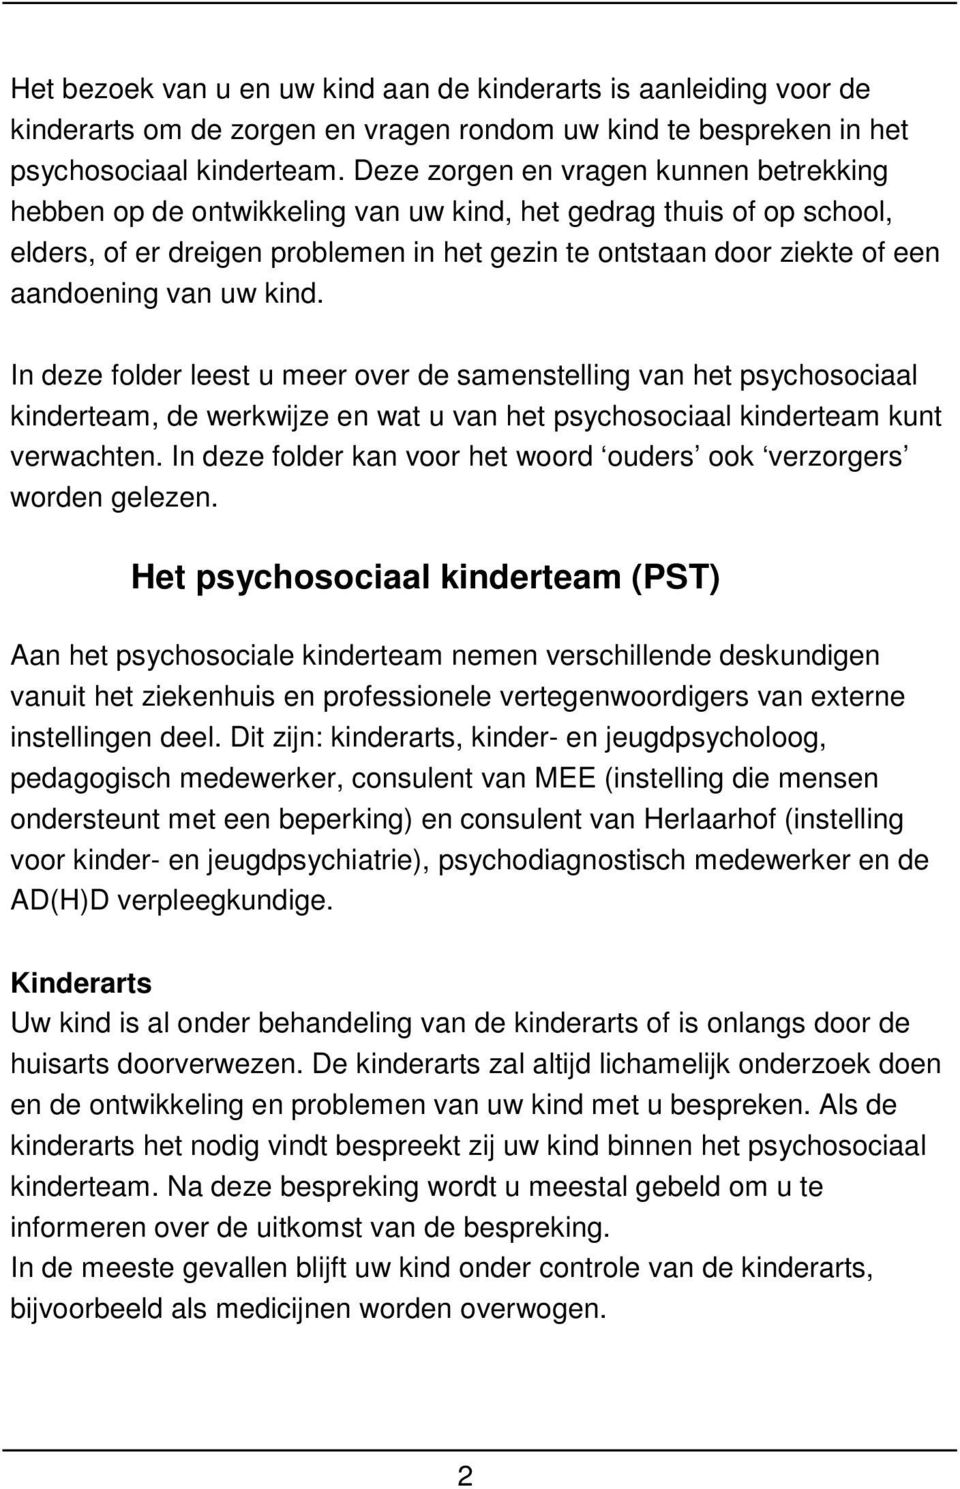 van uw kind. In deze folder leest u meer over de samenstelling van het psychosociaal kinderteam, de werkwijze en wat u van het psychosociaal kinderteam kunt verwachten.